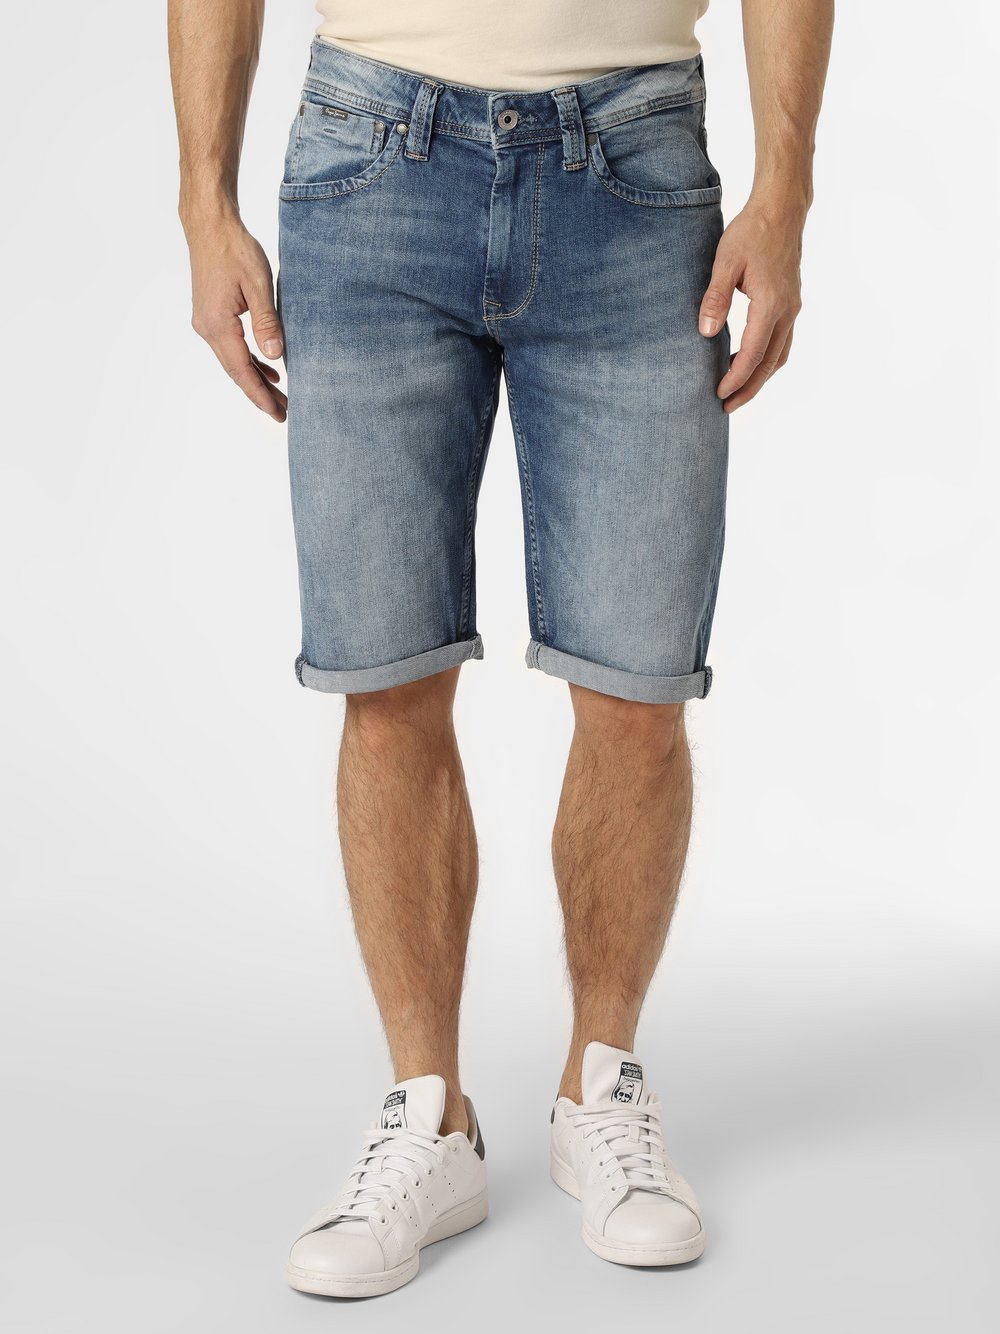 Pepe Jeans - Męskie spodenki jeansowe – Cash, niebieski